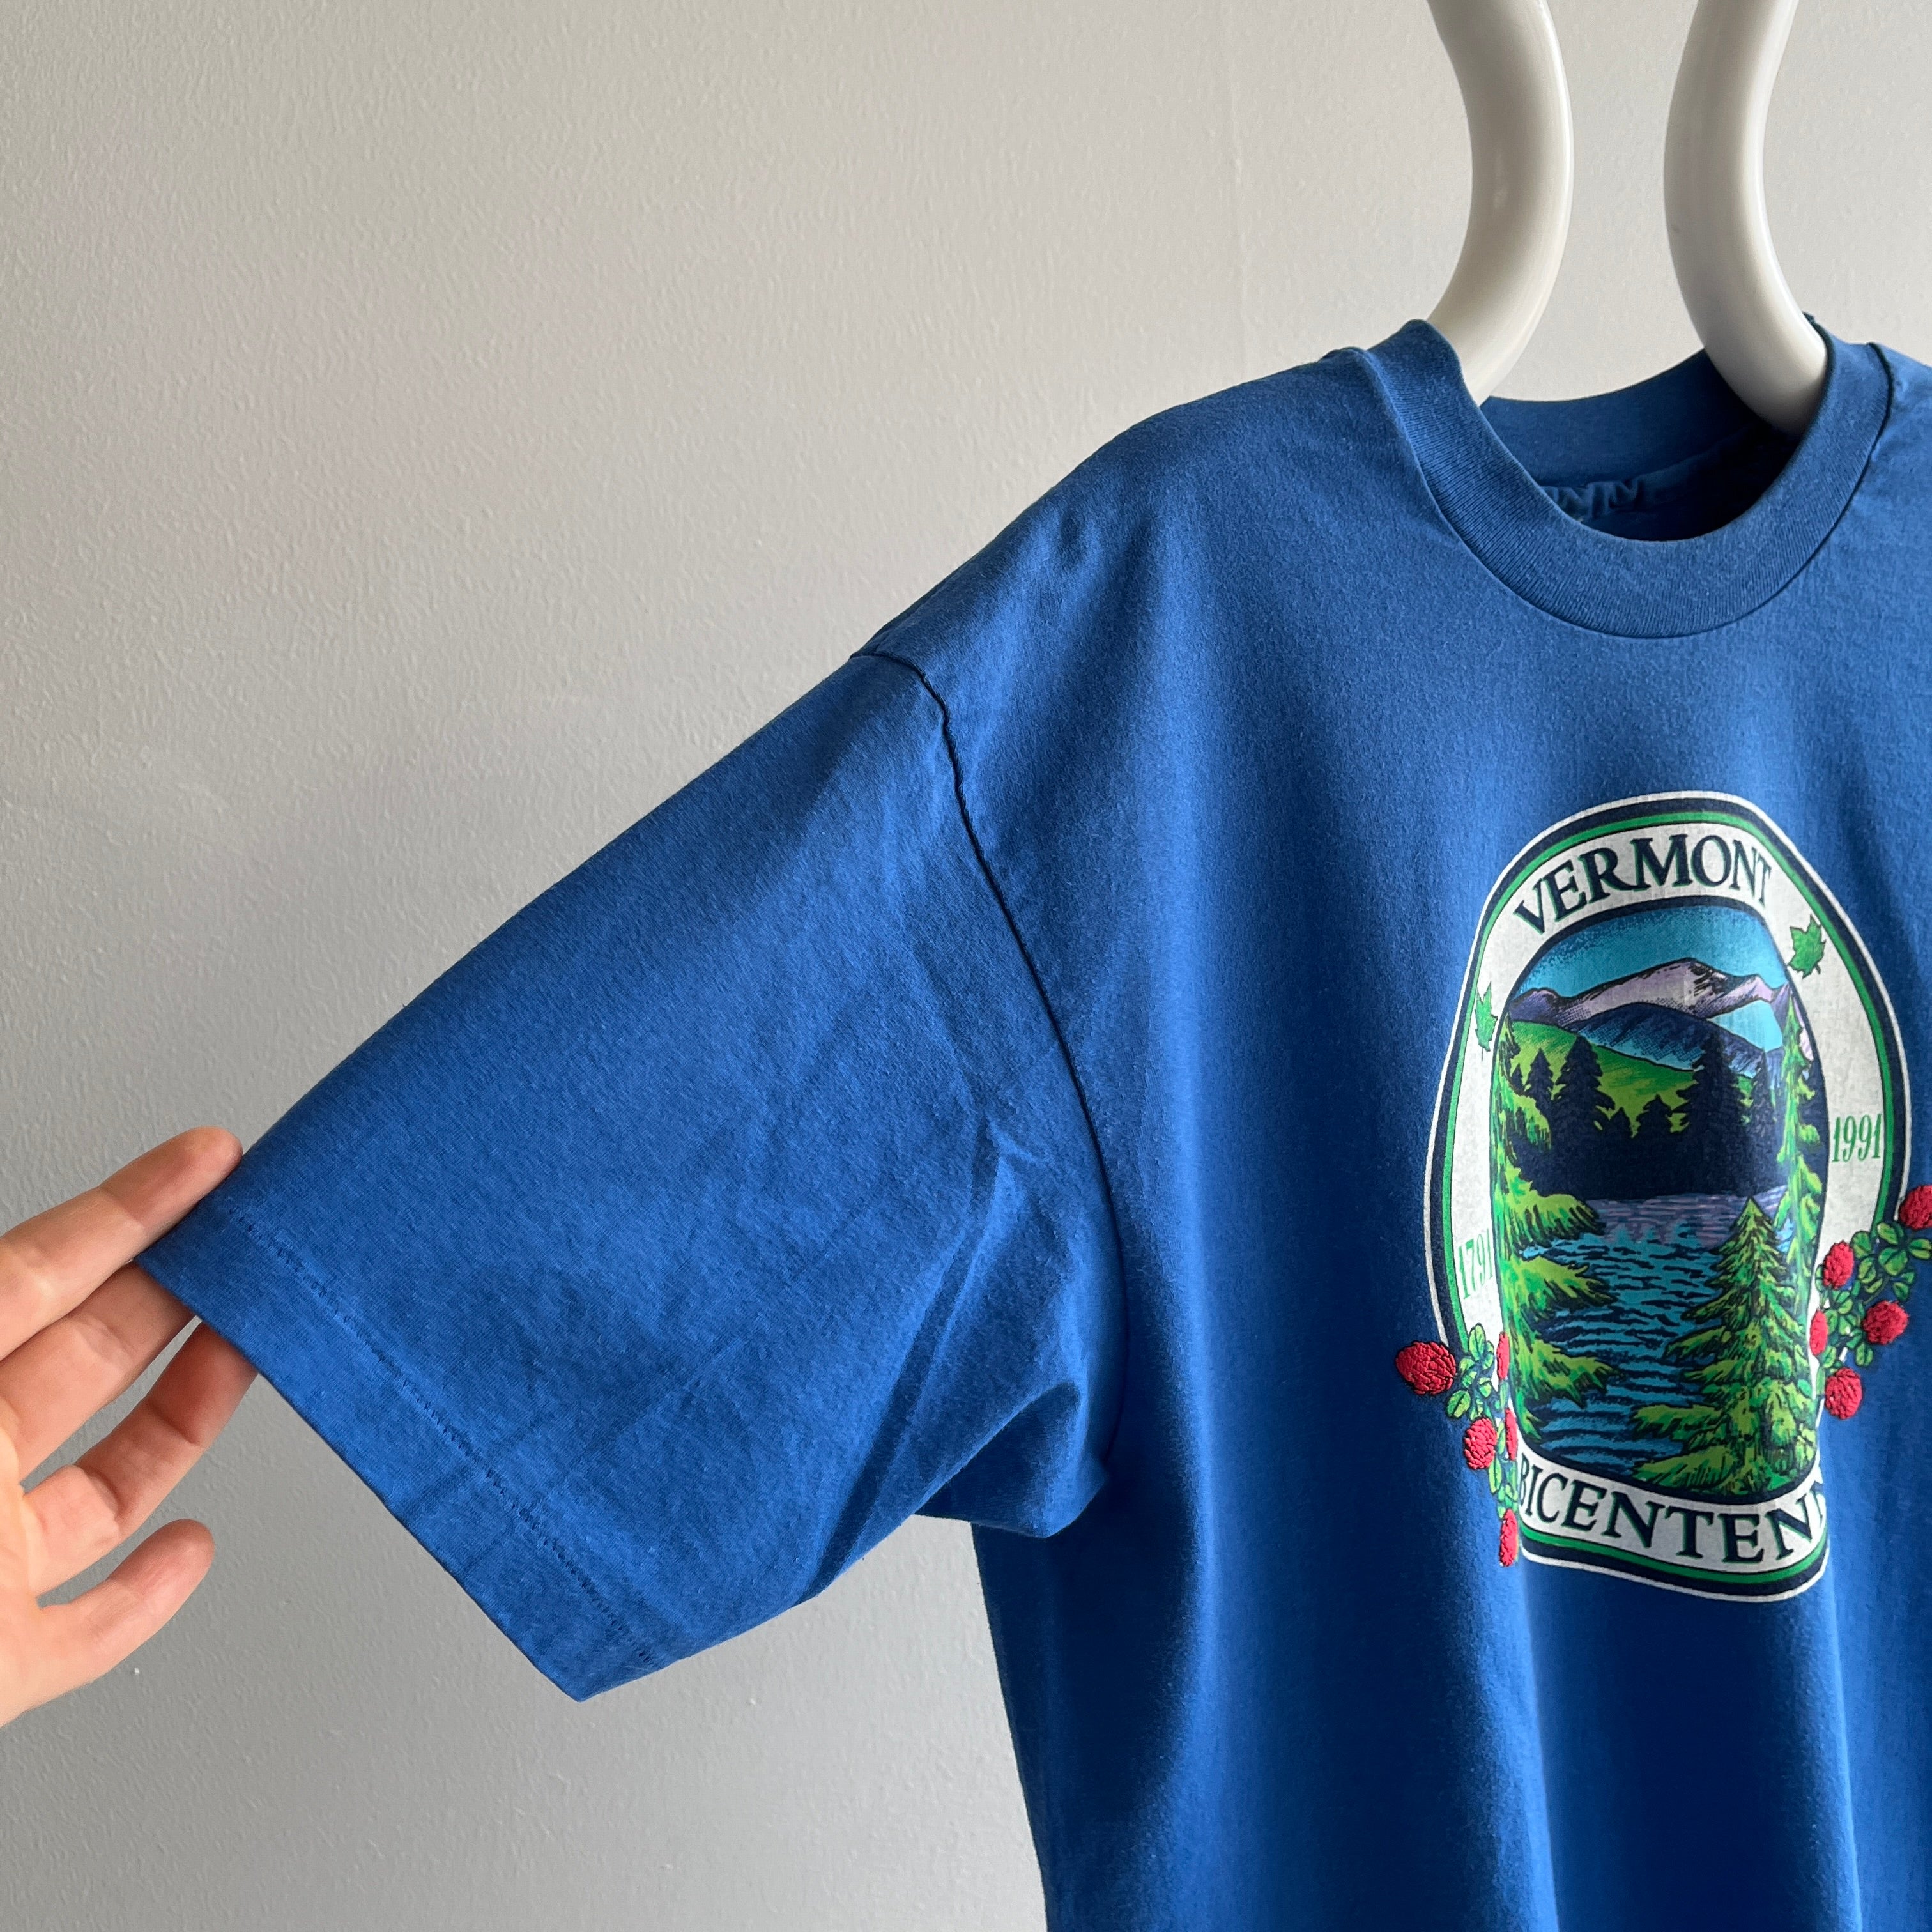 1990-1991 T-shirt touristique du bicentenaire du Vermont